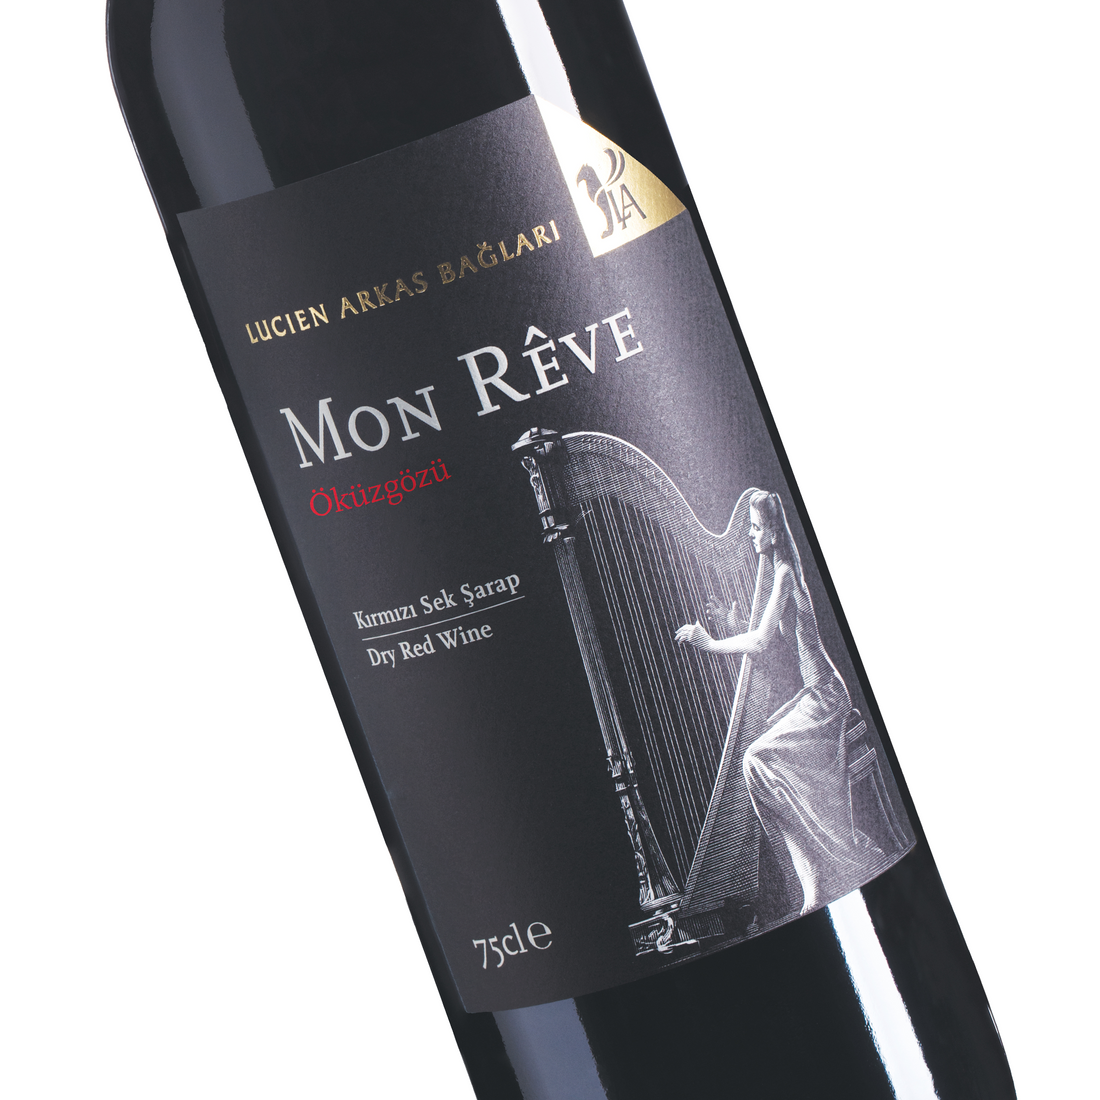 Lucien Arkas Mon Reve Öküzgözü 750ml Organik Kırmızı Sek Şarap